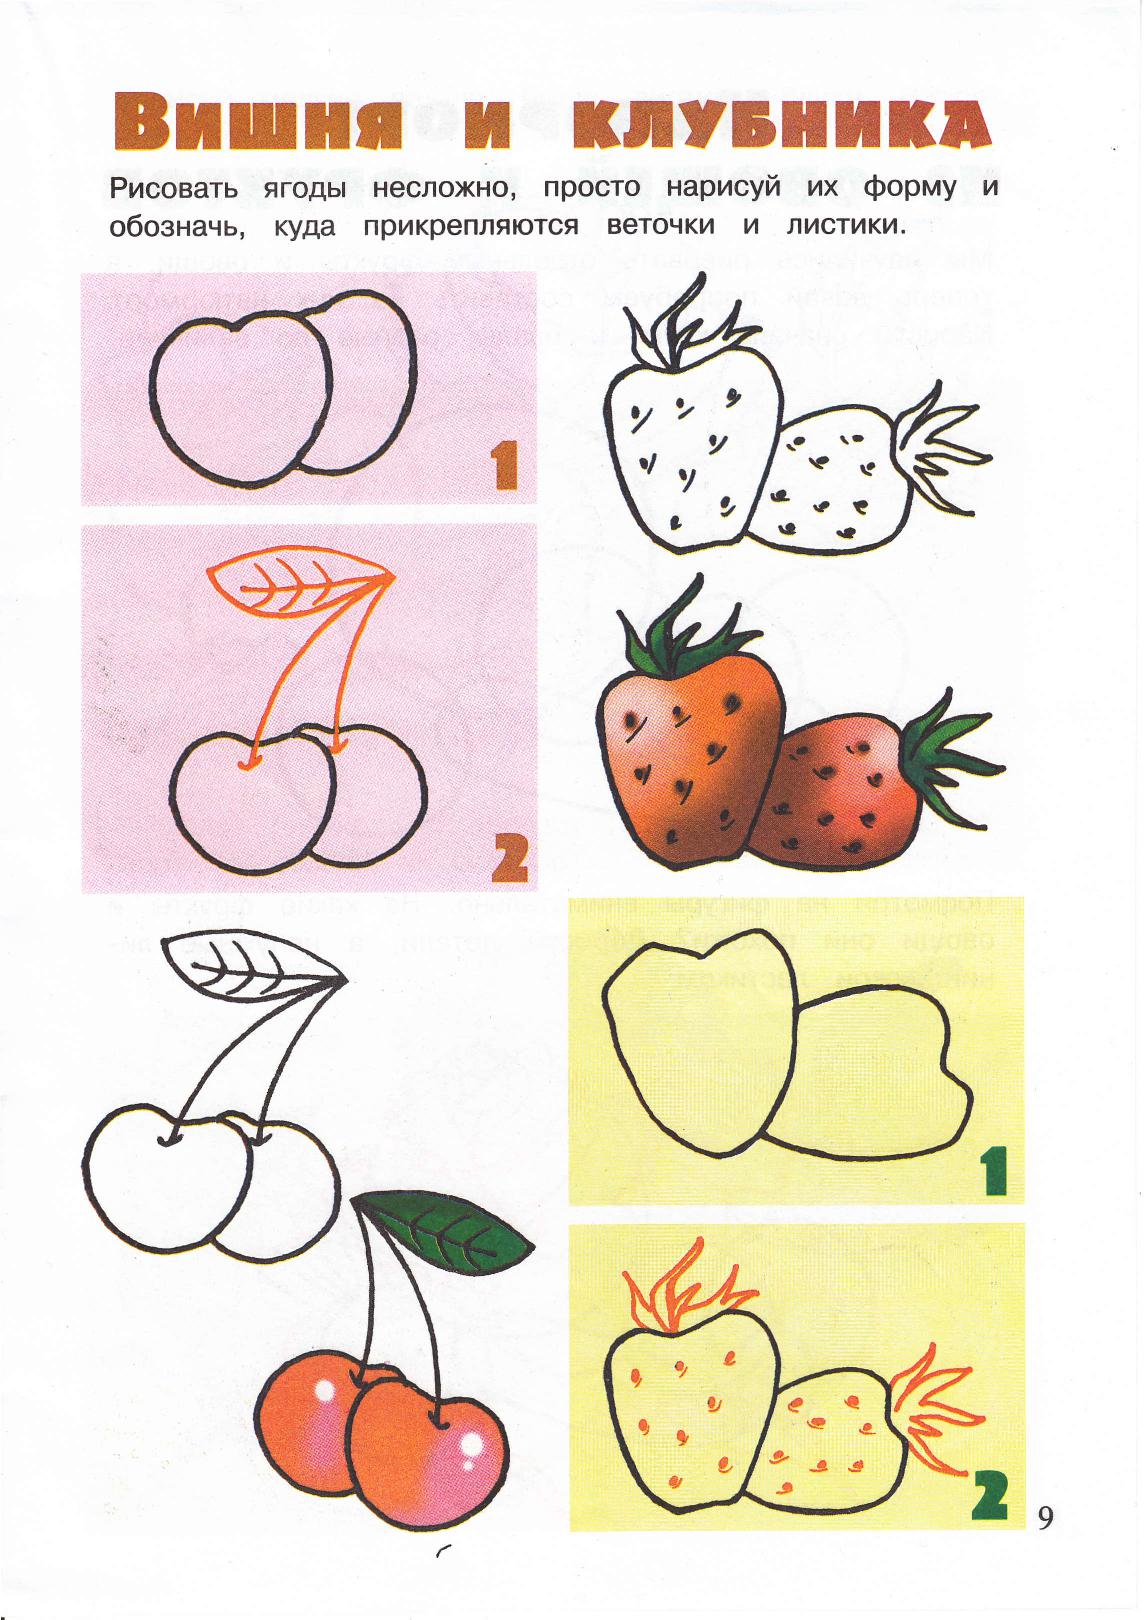 Рисование для детей овощи и фрукты